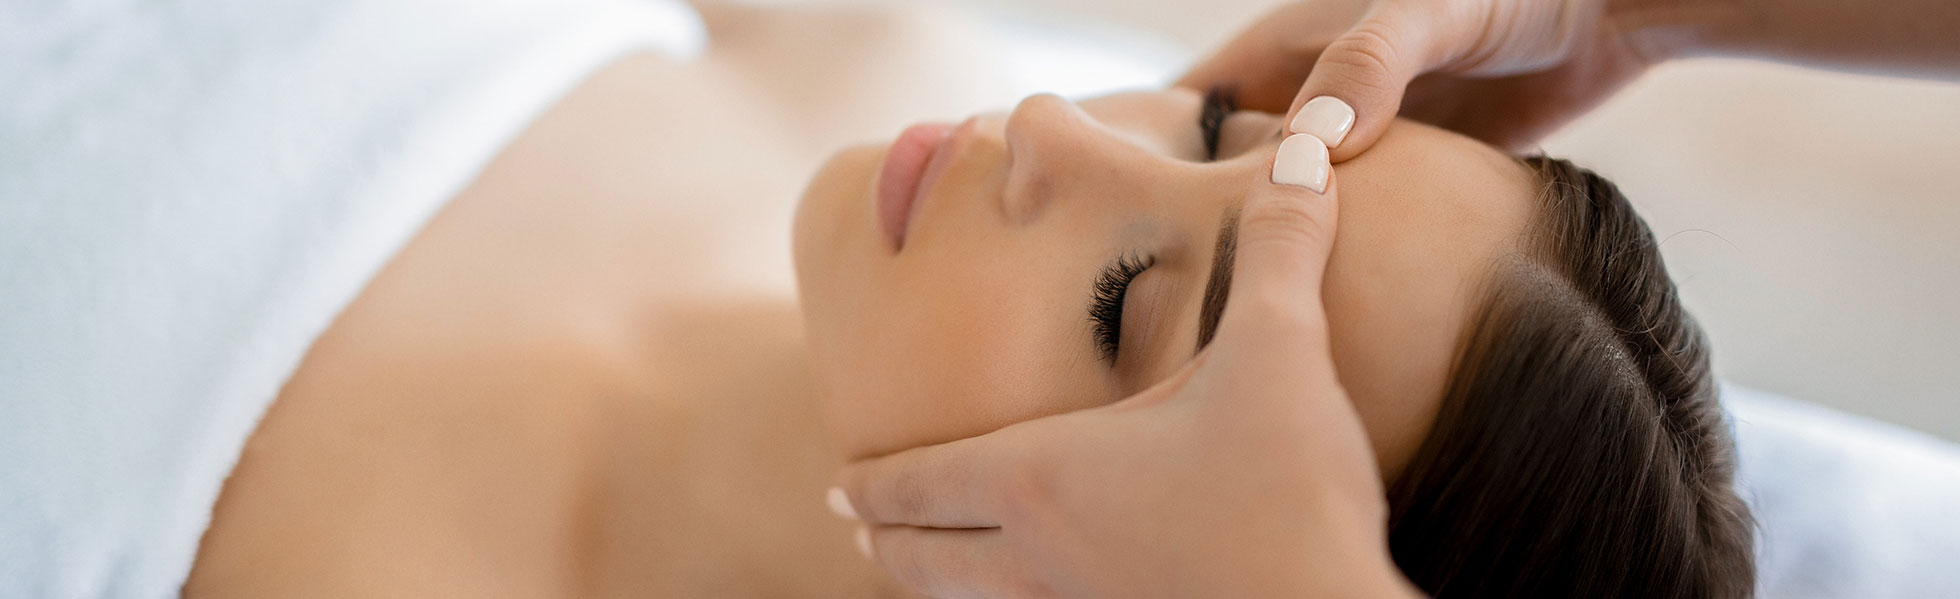 Le centre dermaclinic propose la méthode Renata Franca, des soins par massage beauté du visage